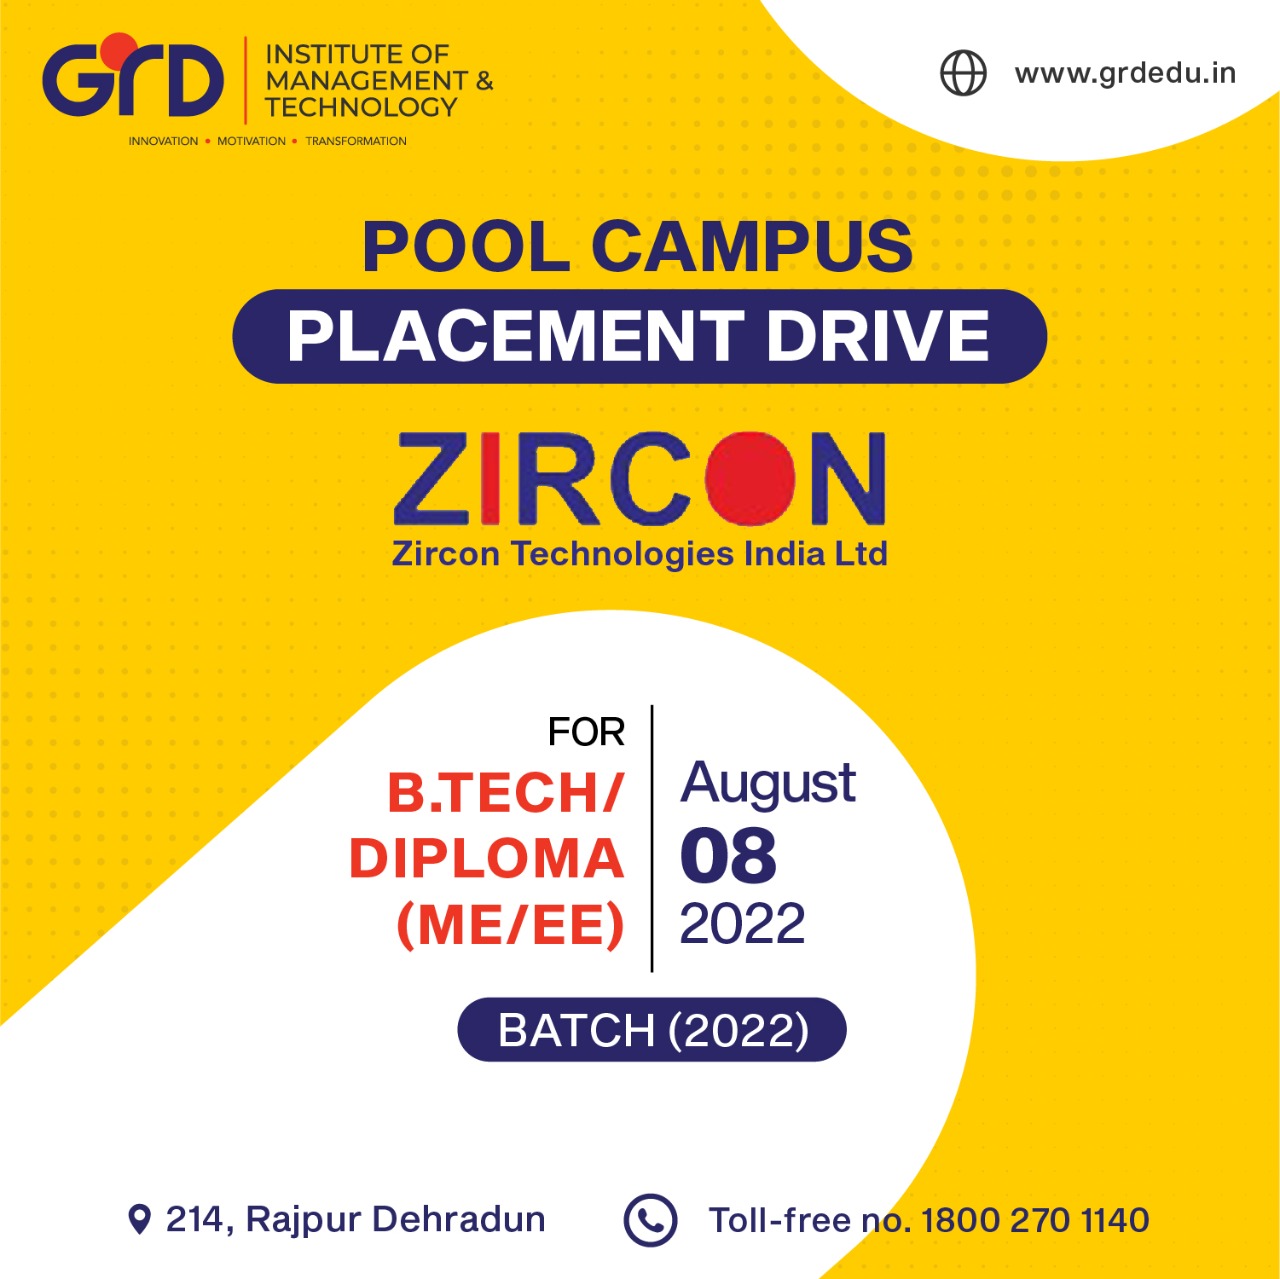 Zircon Technologies India Ltd